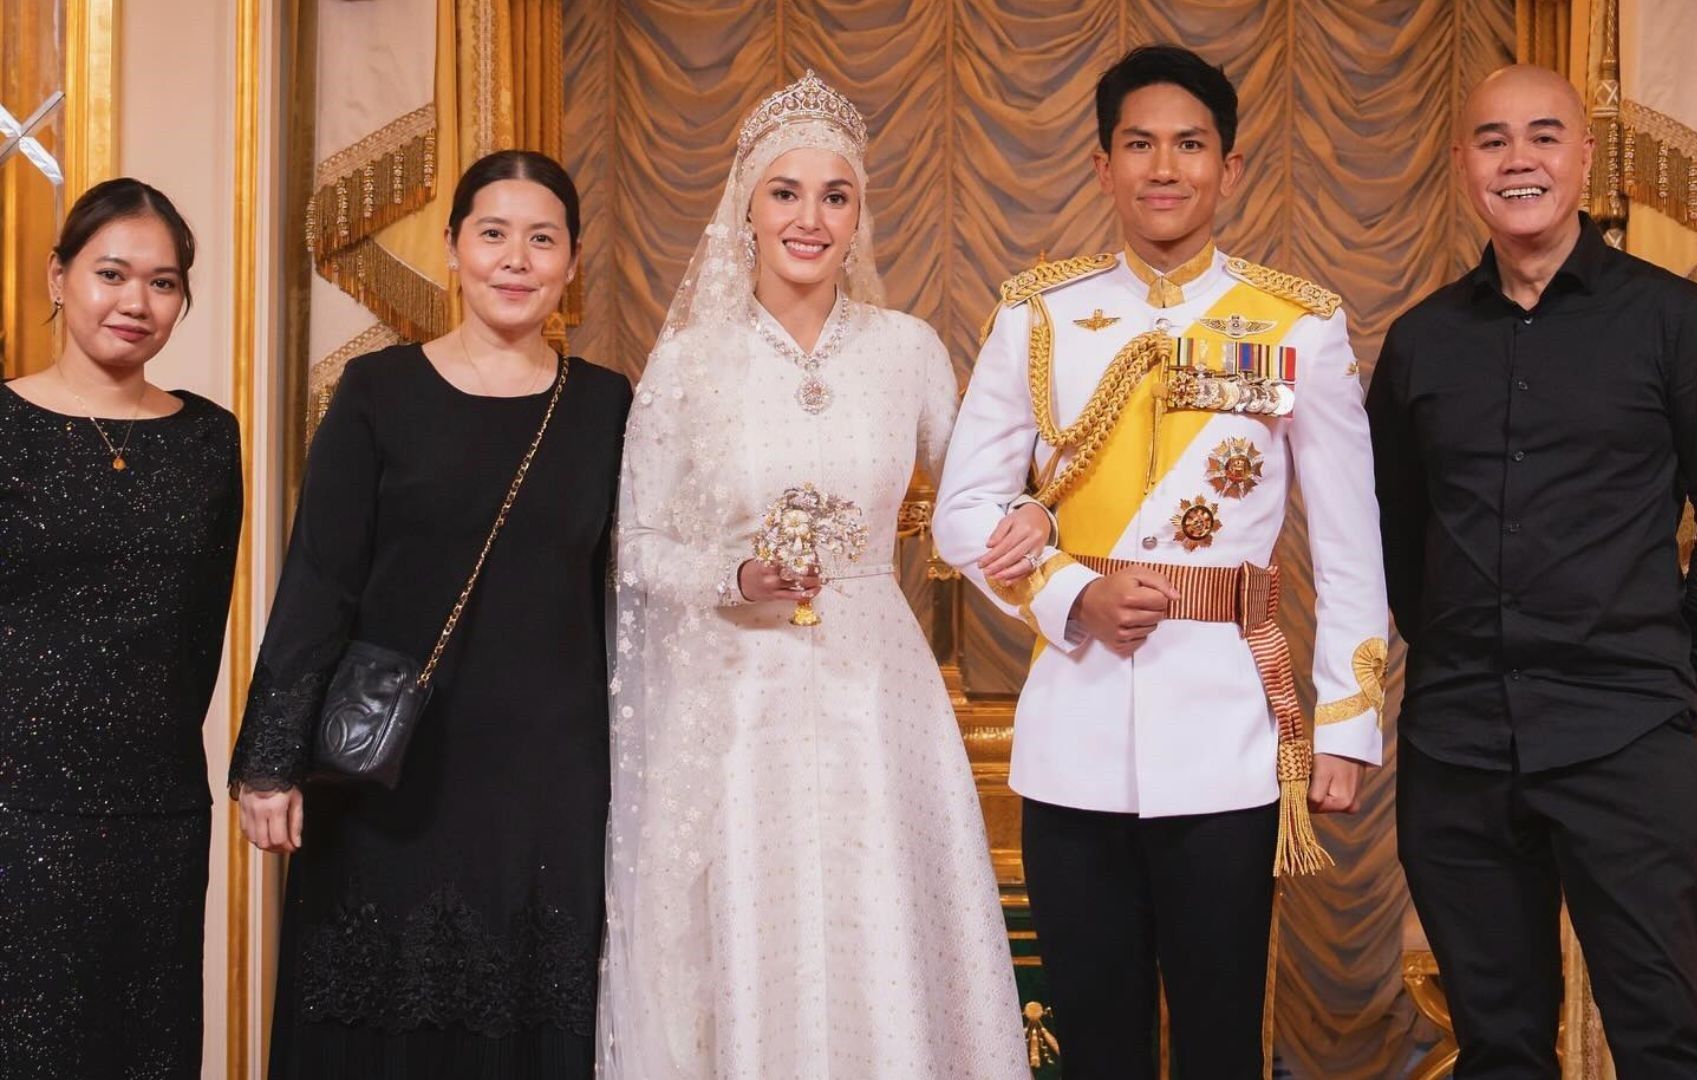 Filipino makeup artist reflects doing makeup for Bruneiâs royal wedding